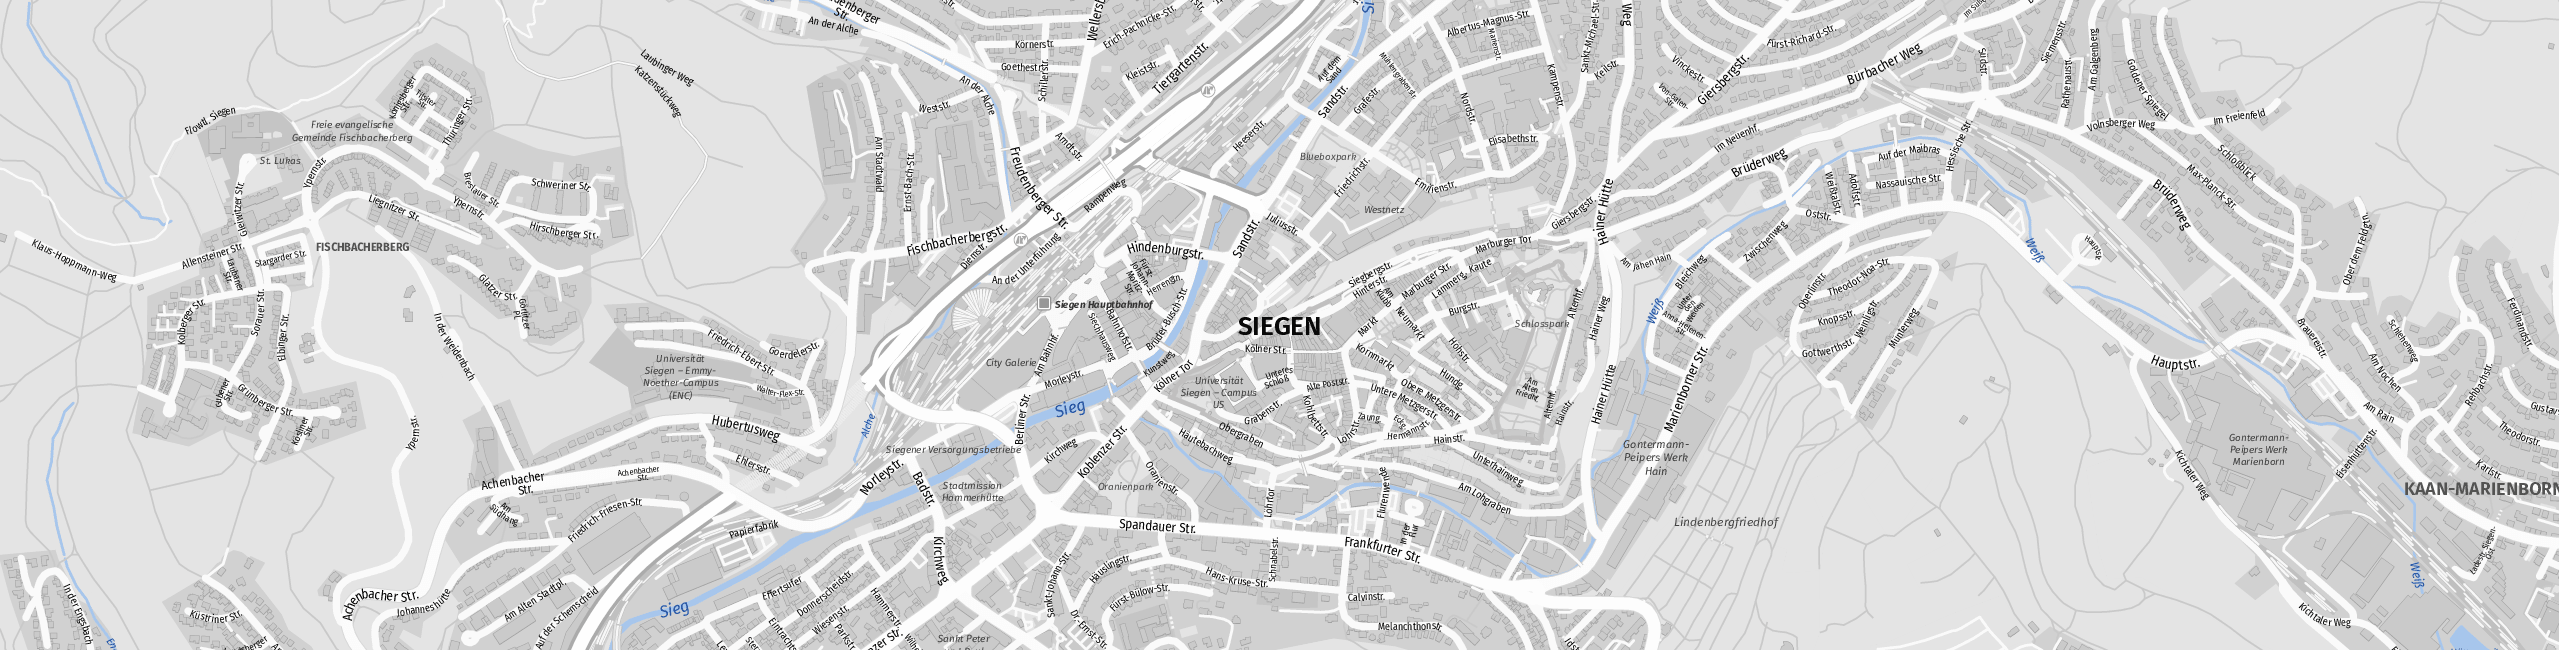 Stadtplan Siegen zum Downloaden.